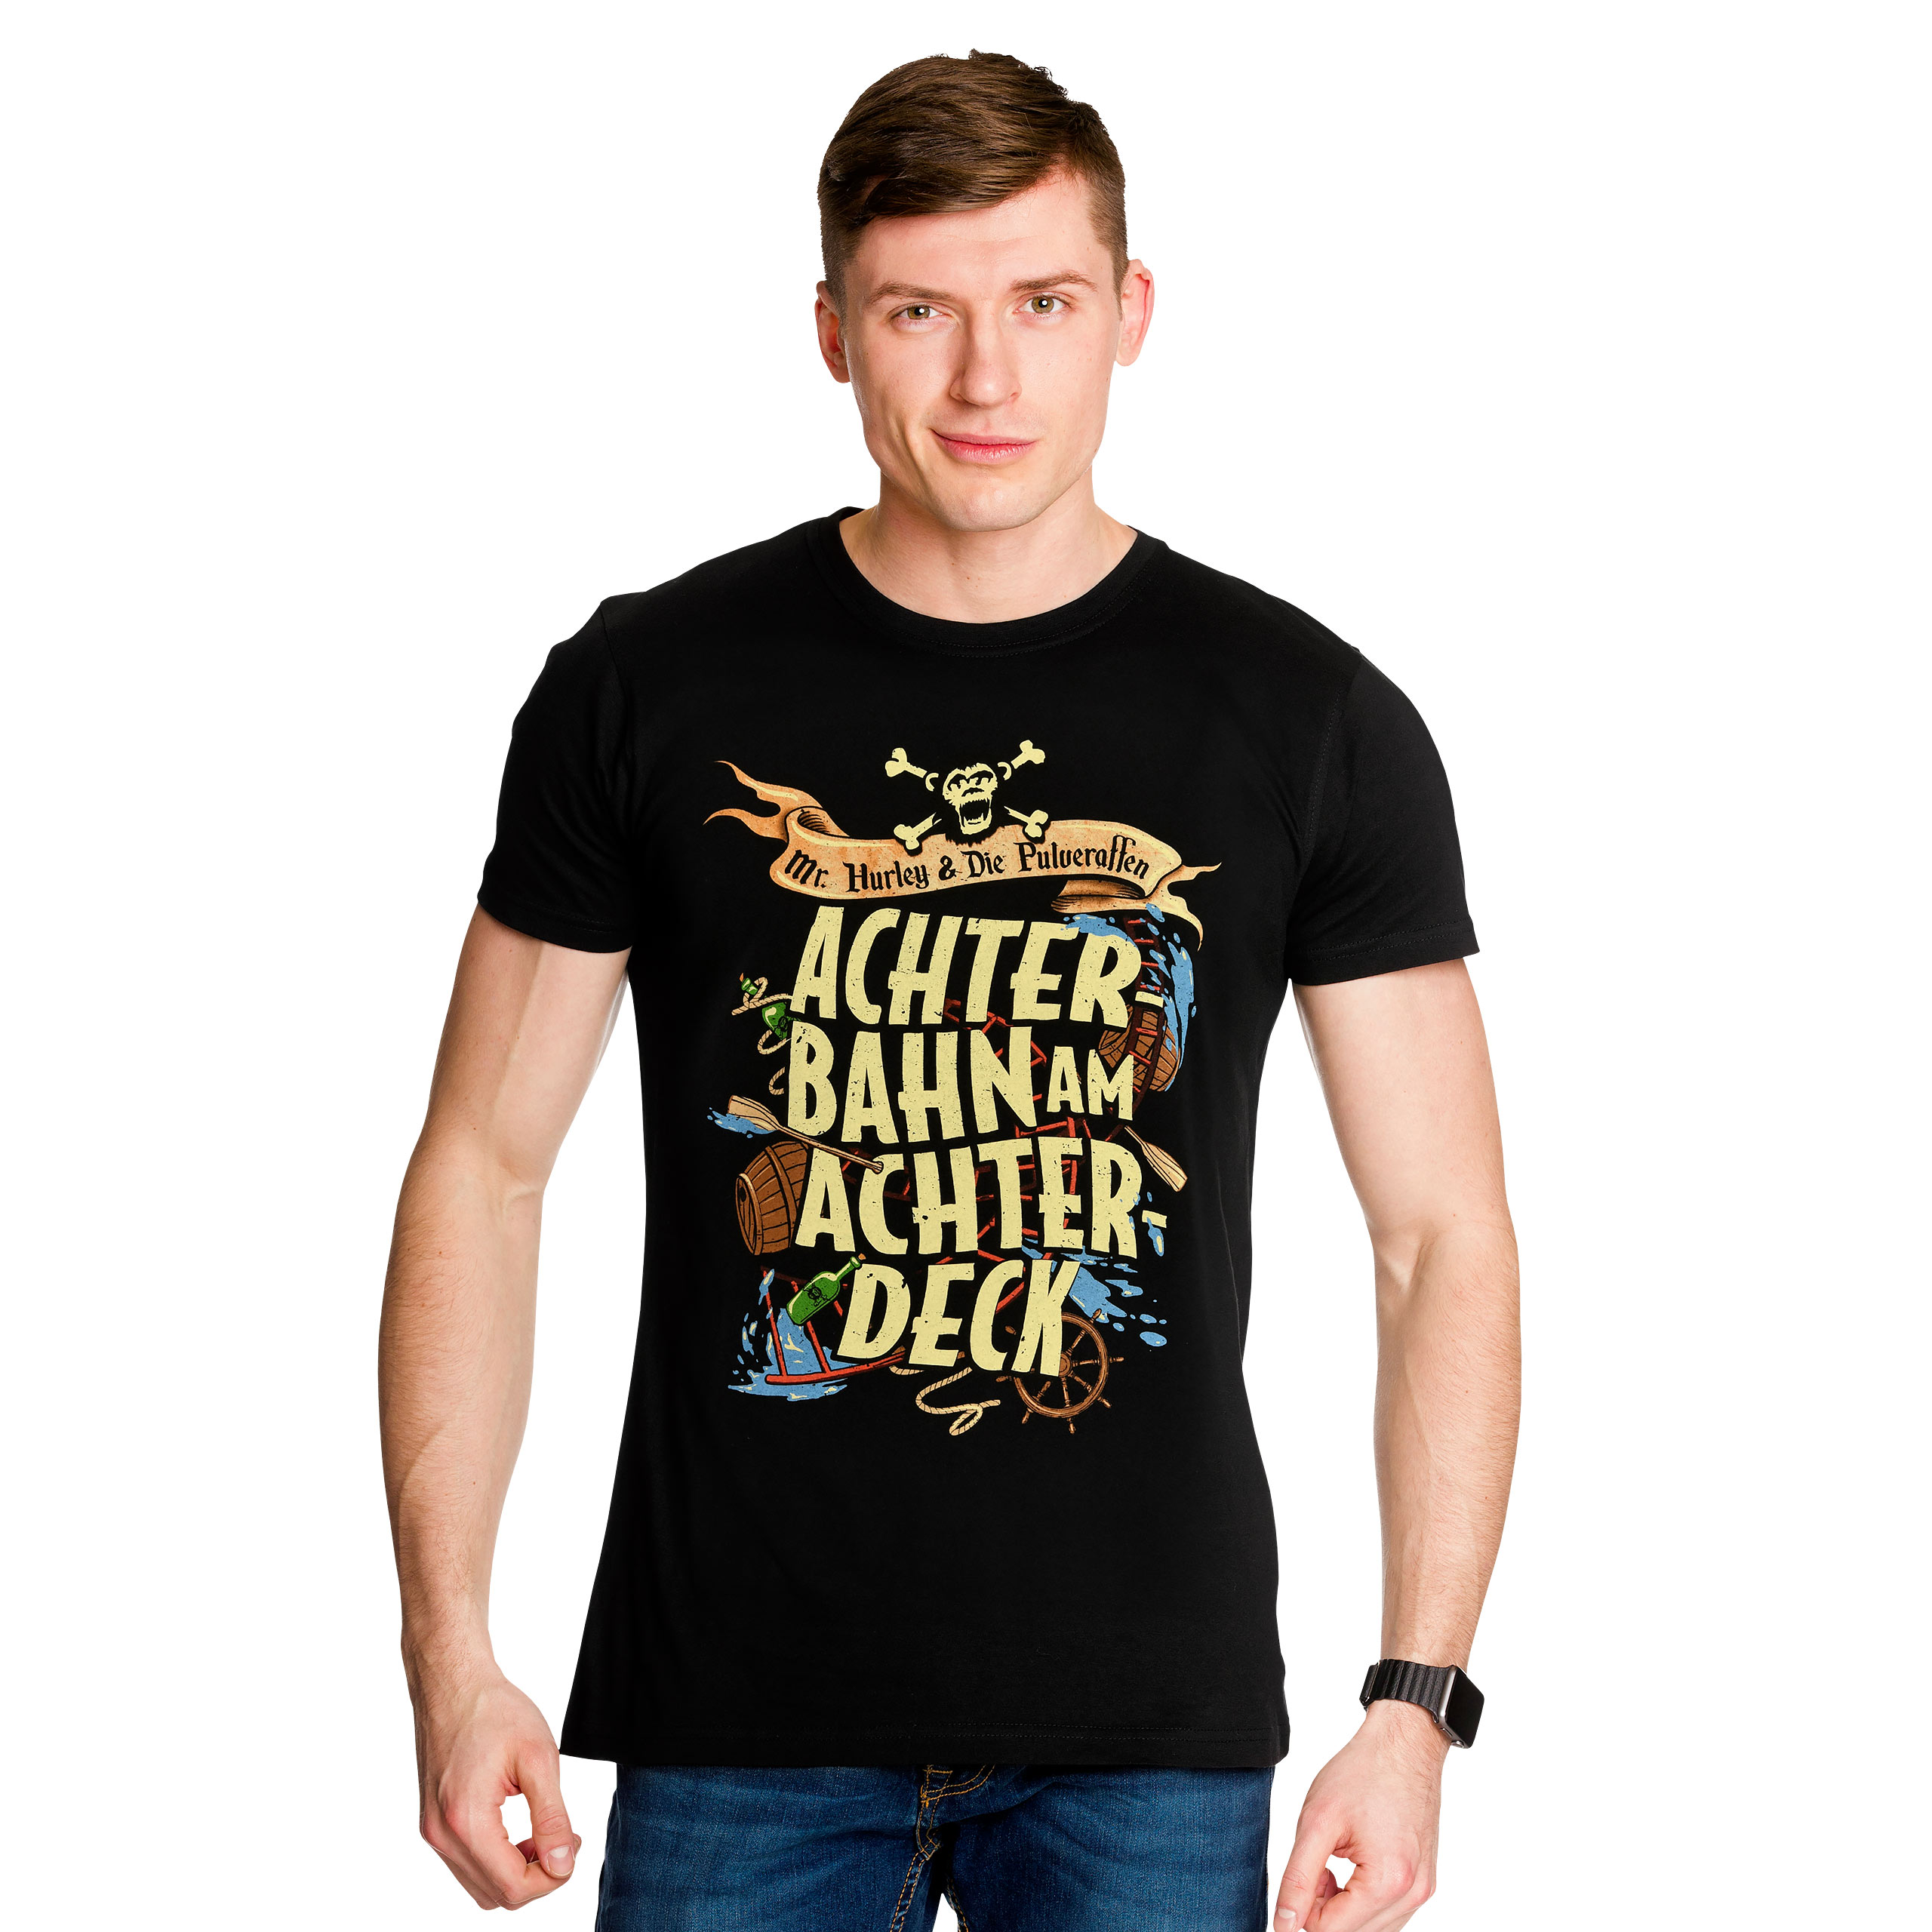 Mr. Hurley & Les Singes Poudre - T-shirt noir Roller Coaster